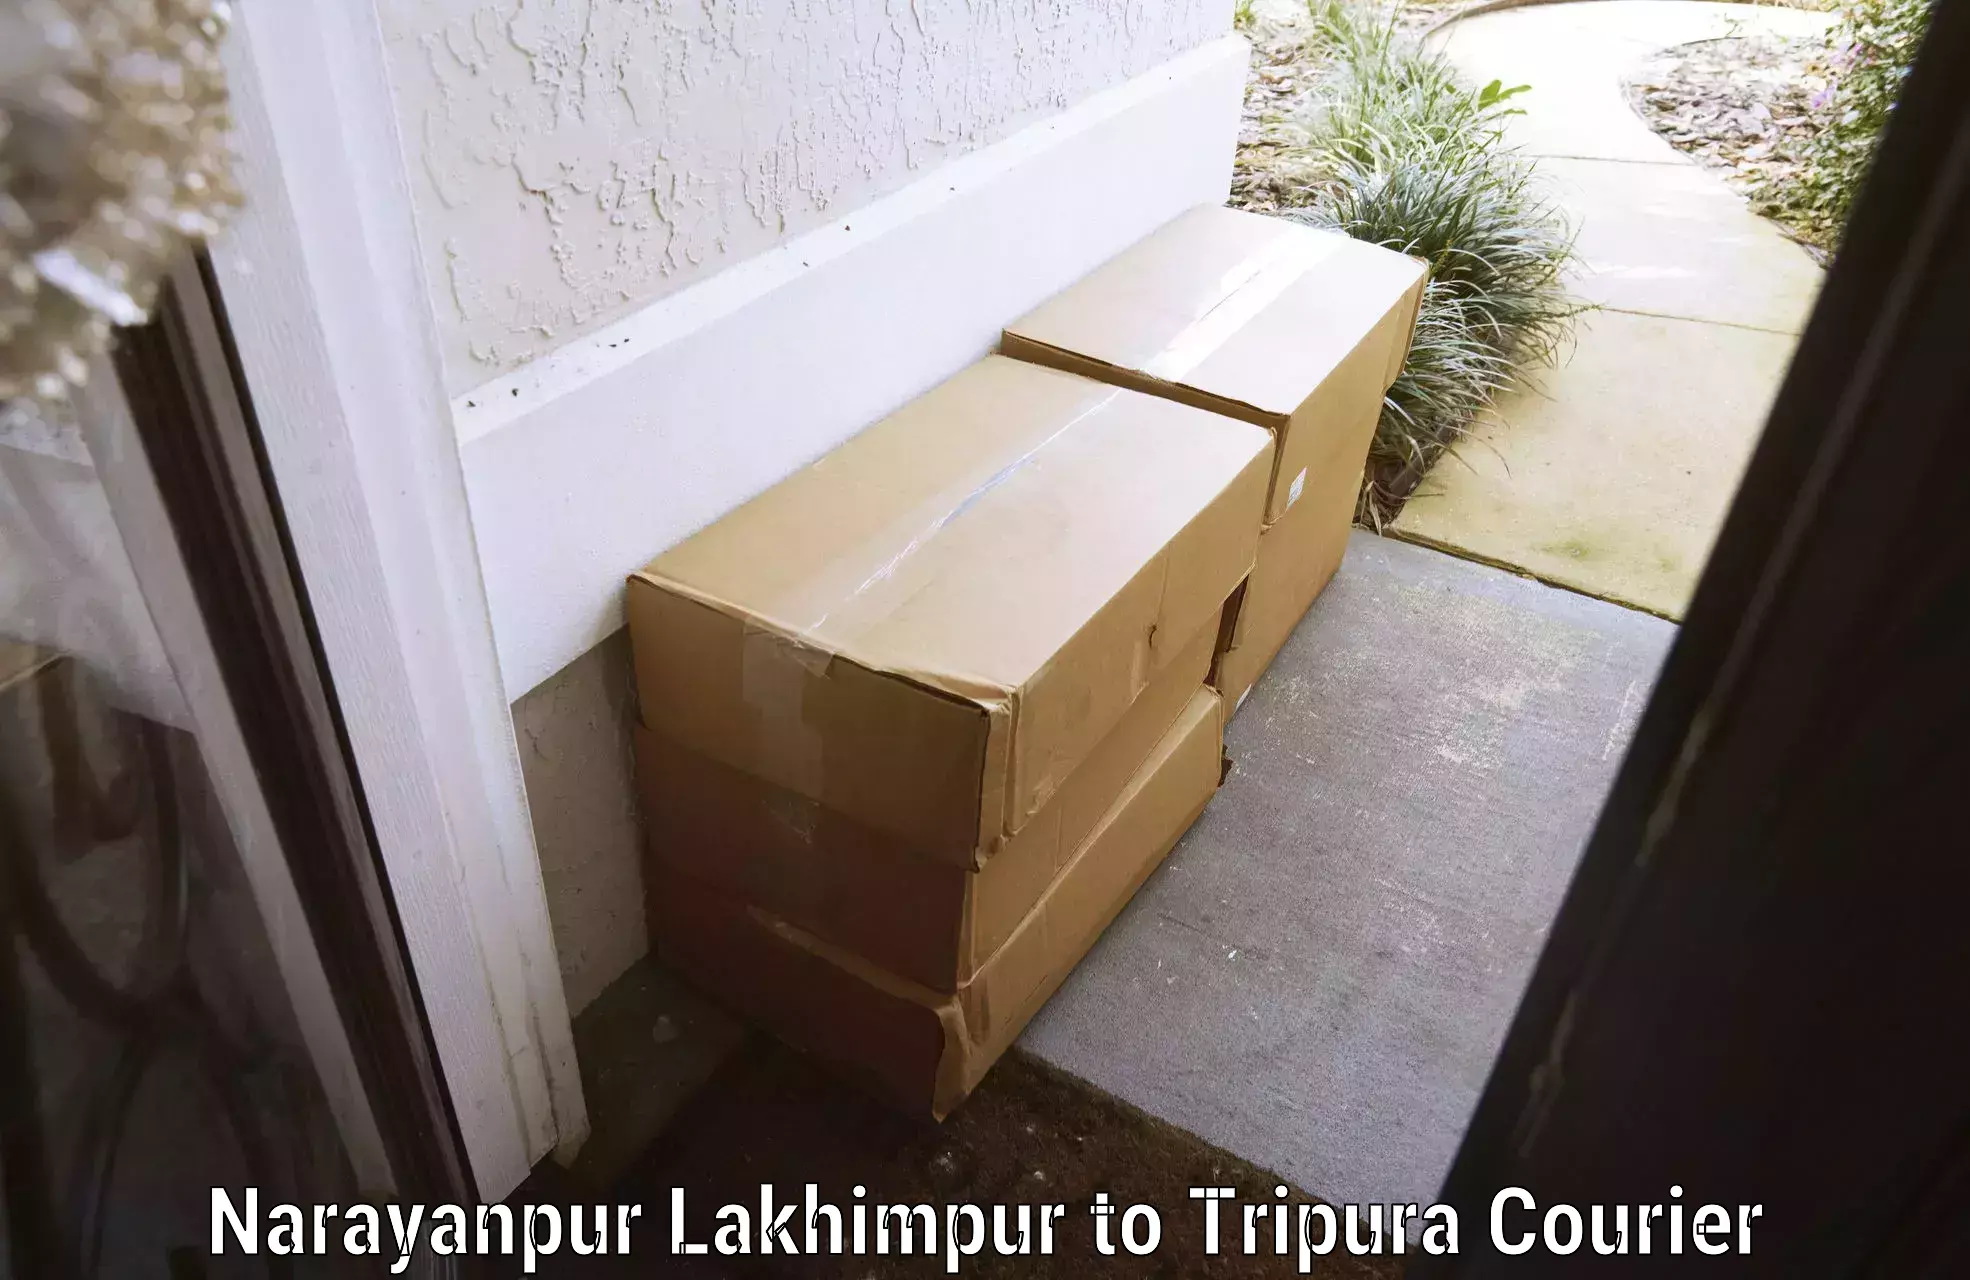 Baggage transport management Narayanpur Lakhimpur to IIIT Agartala